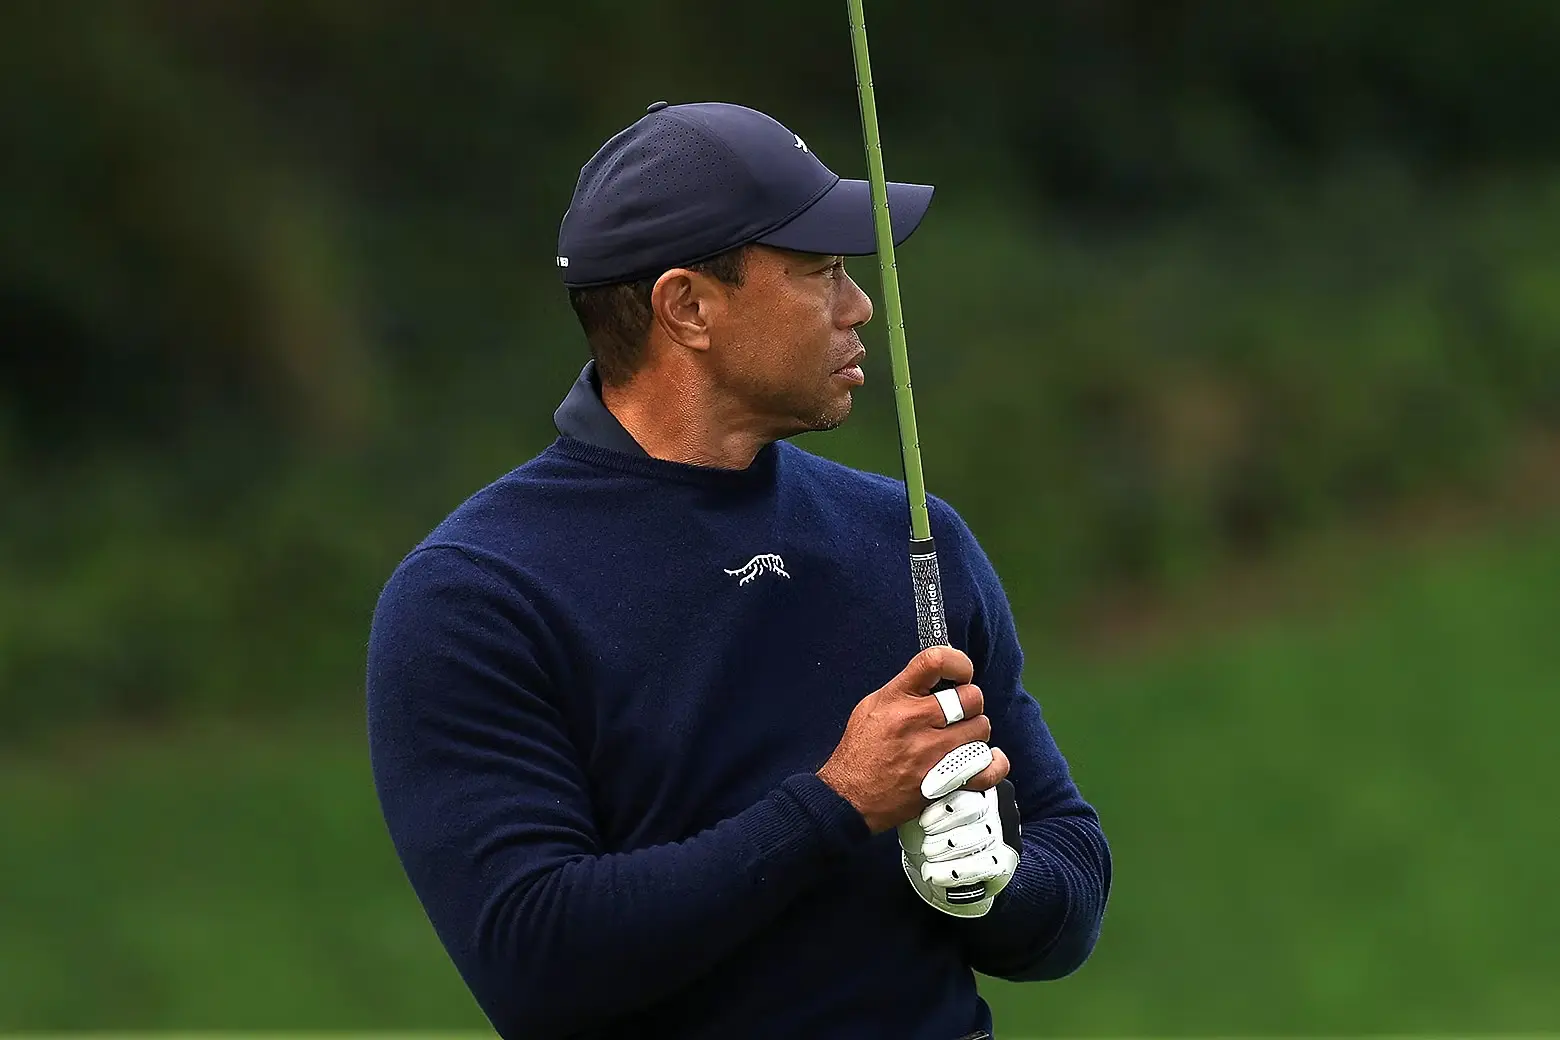 Tiger Woods Back Issues Sideline Him for Valspar Championship